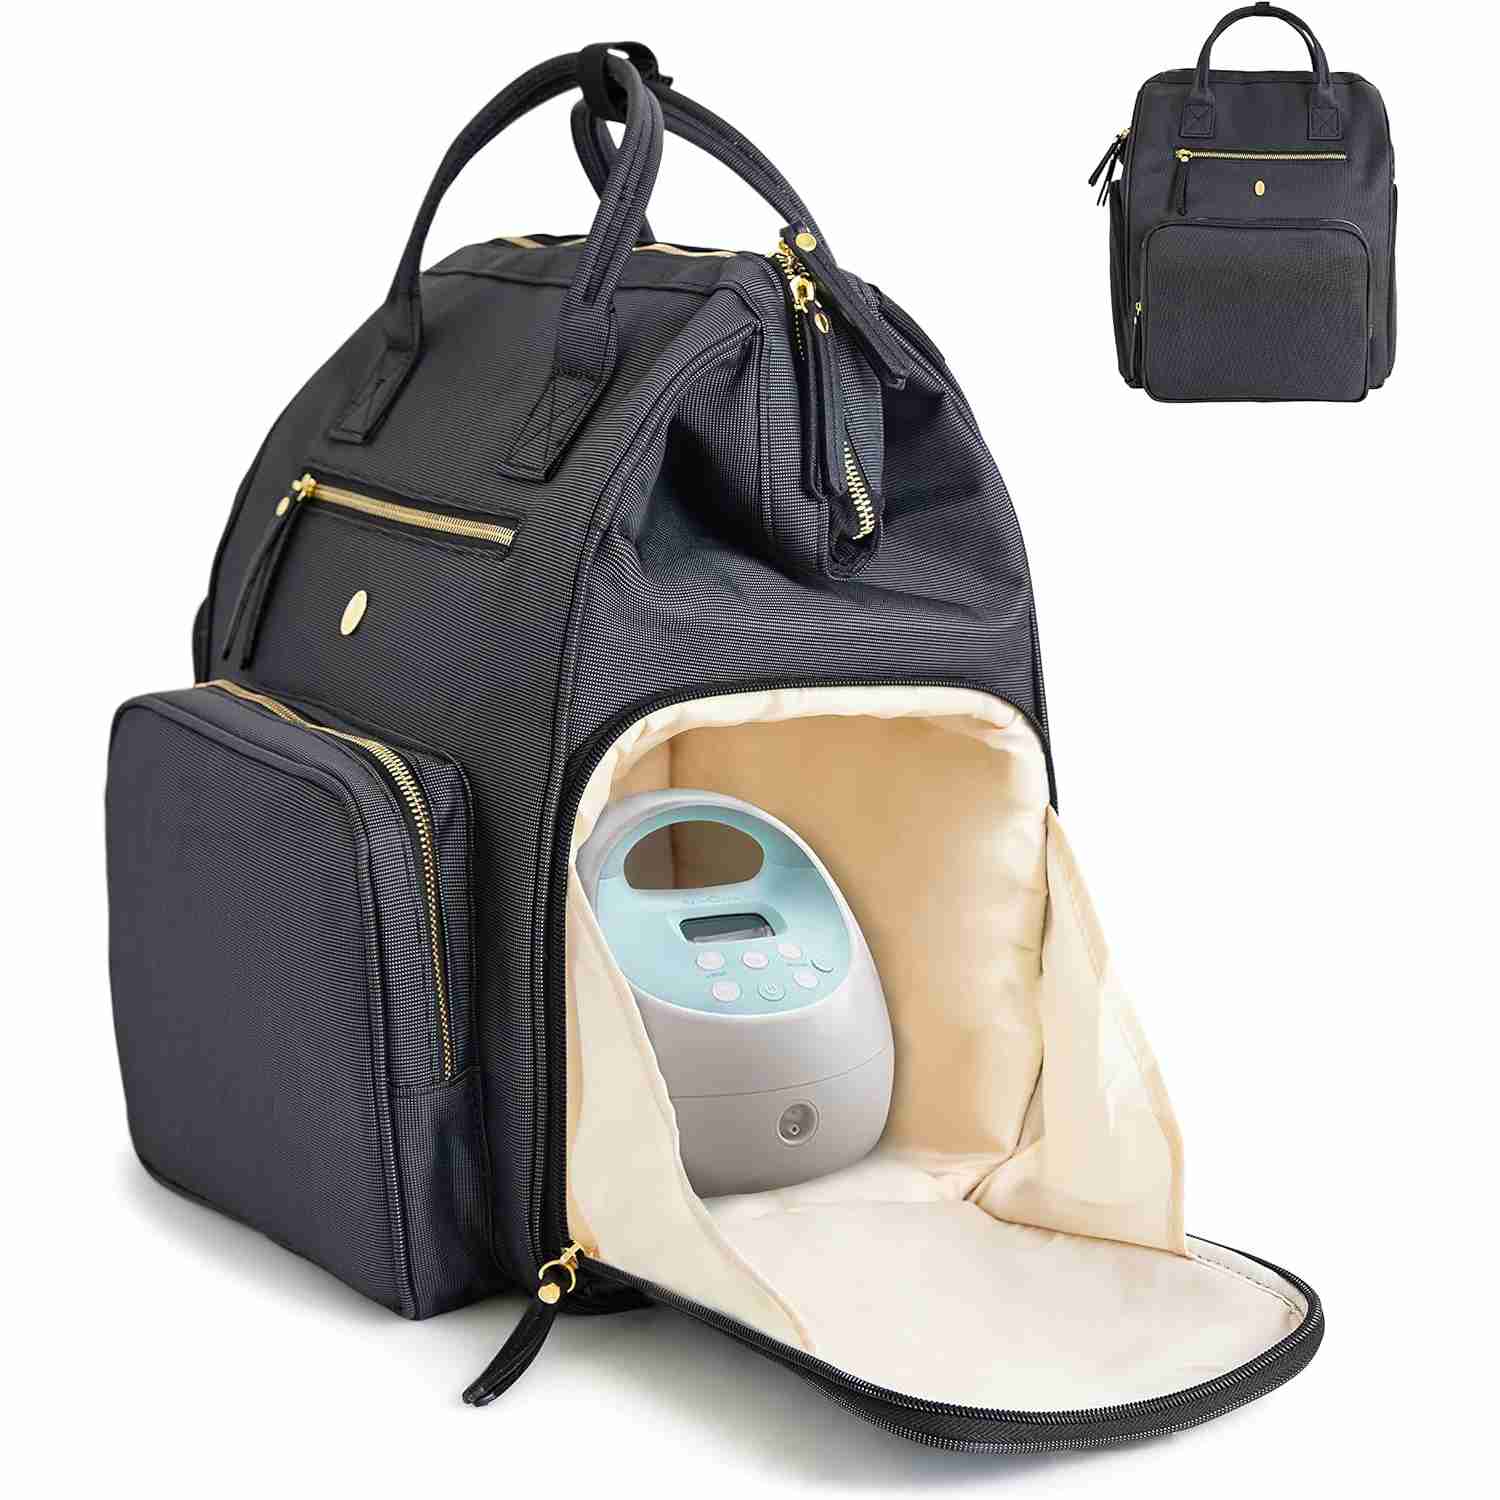 breastpump-backpack-bag-with-cooler-pocket with cash back rebate